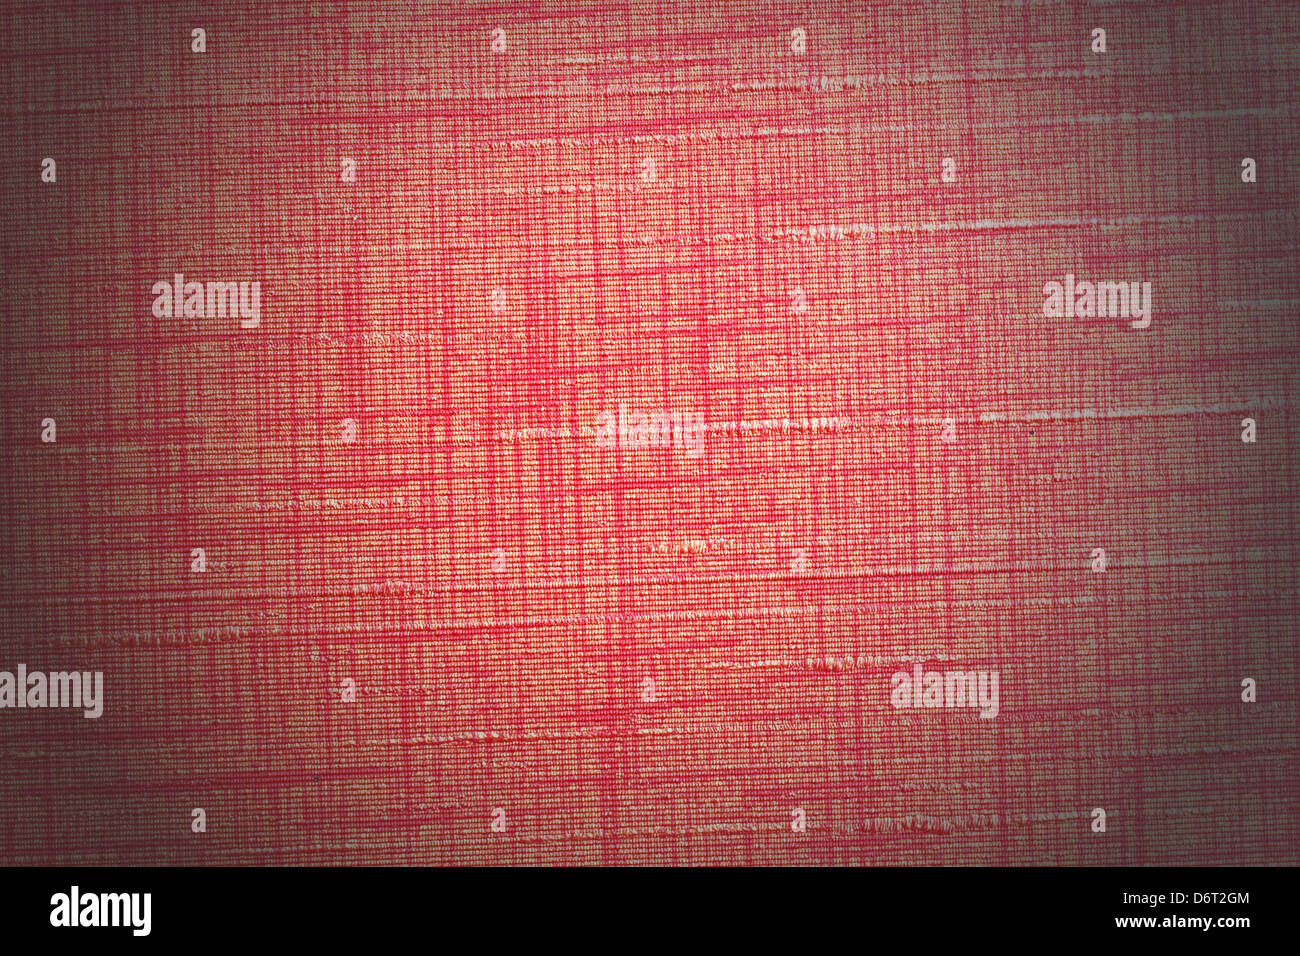 Mur peint. Informations de fond tissu rouge paradoxe. Banque D'Images